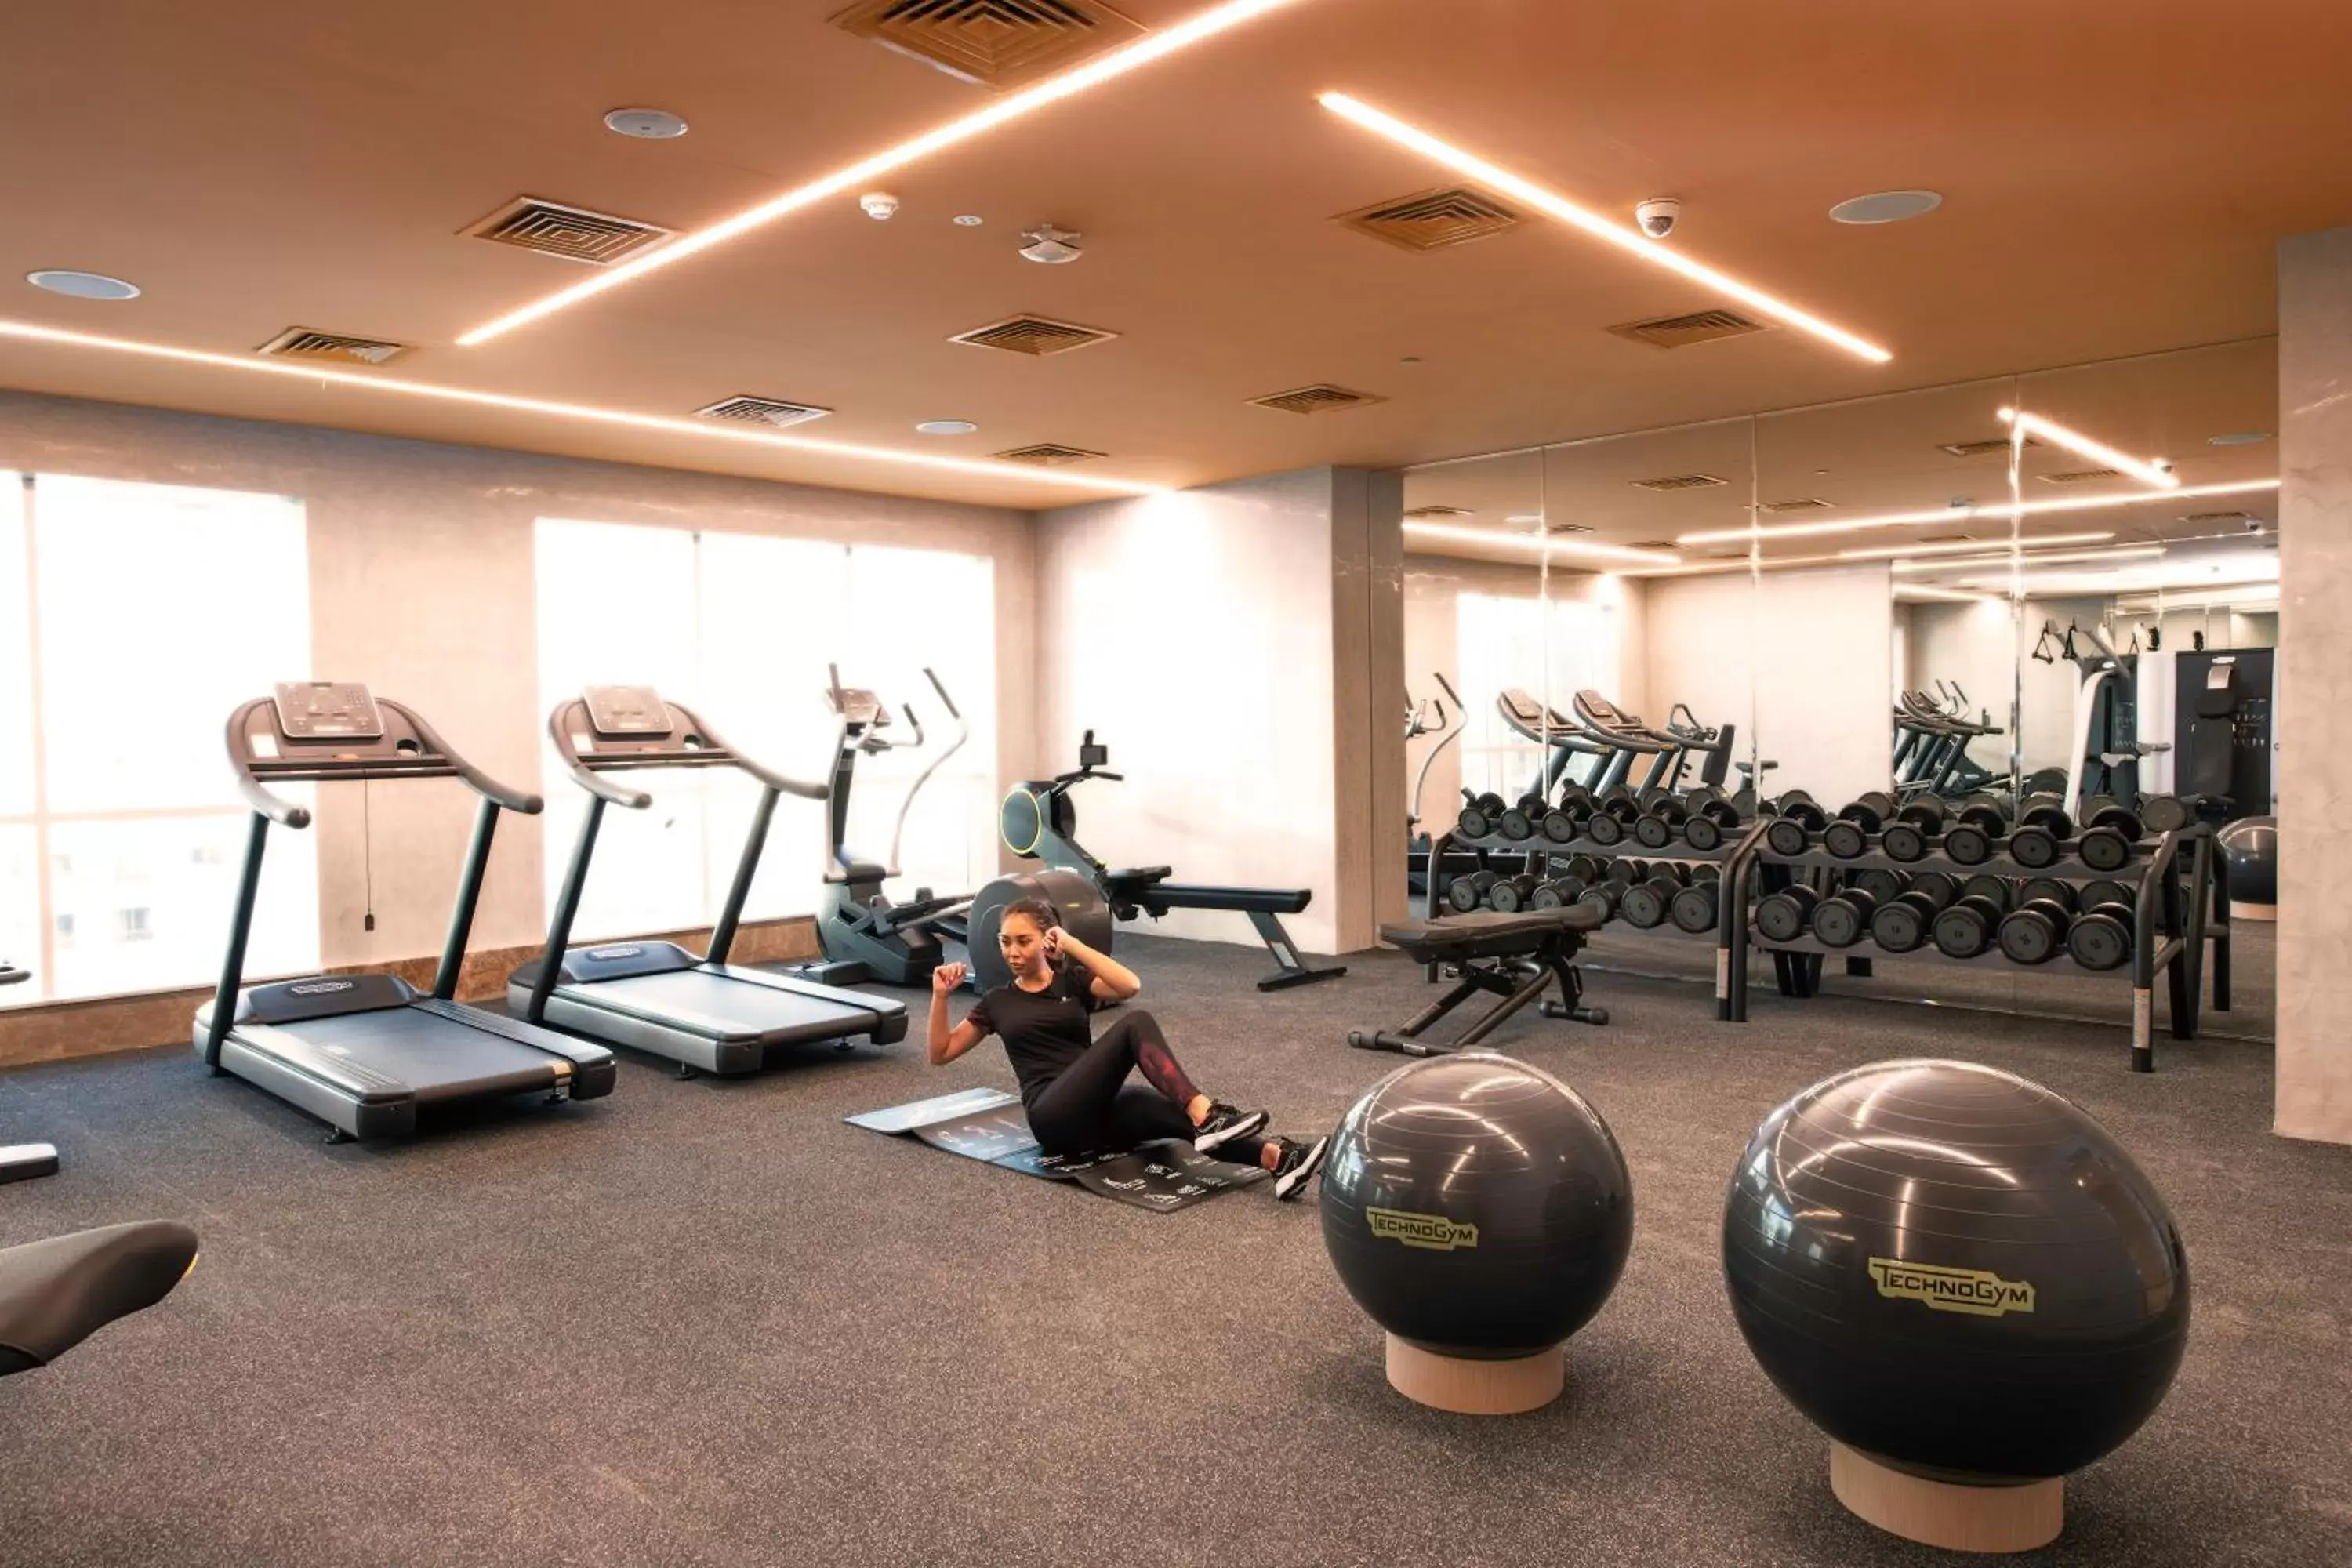 Fitness centre/facilities, Fitness Center/Facilities in Stella Di Mare Dubai Marina Hotel